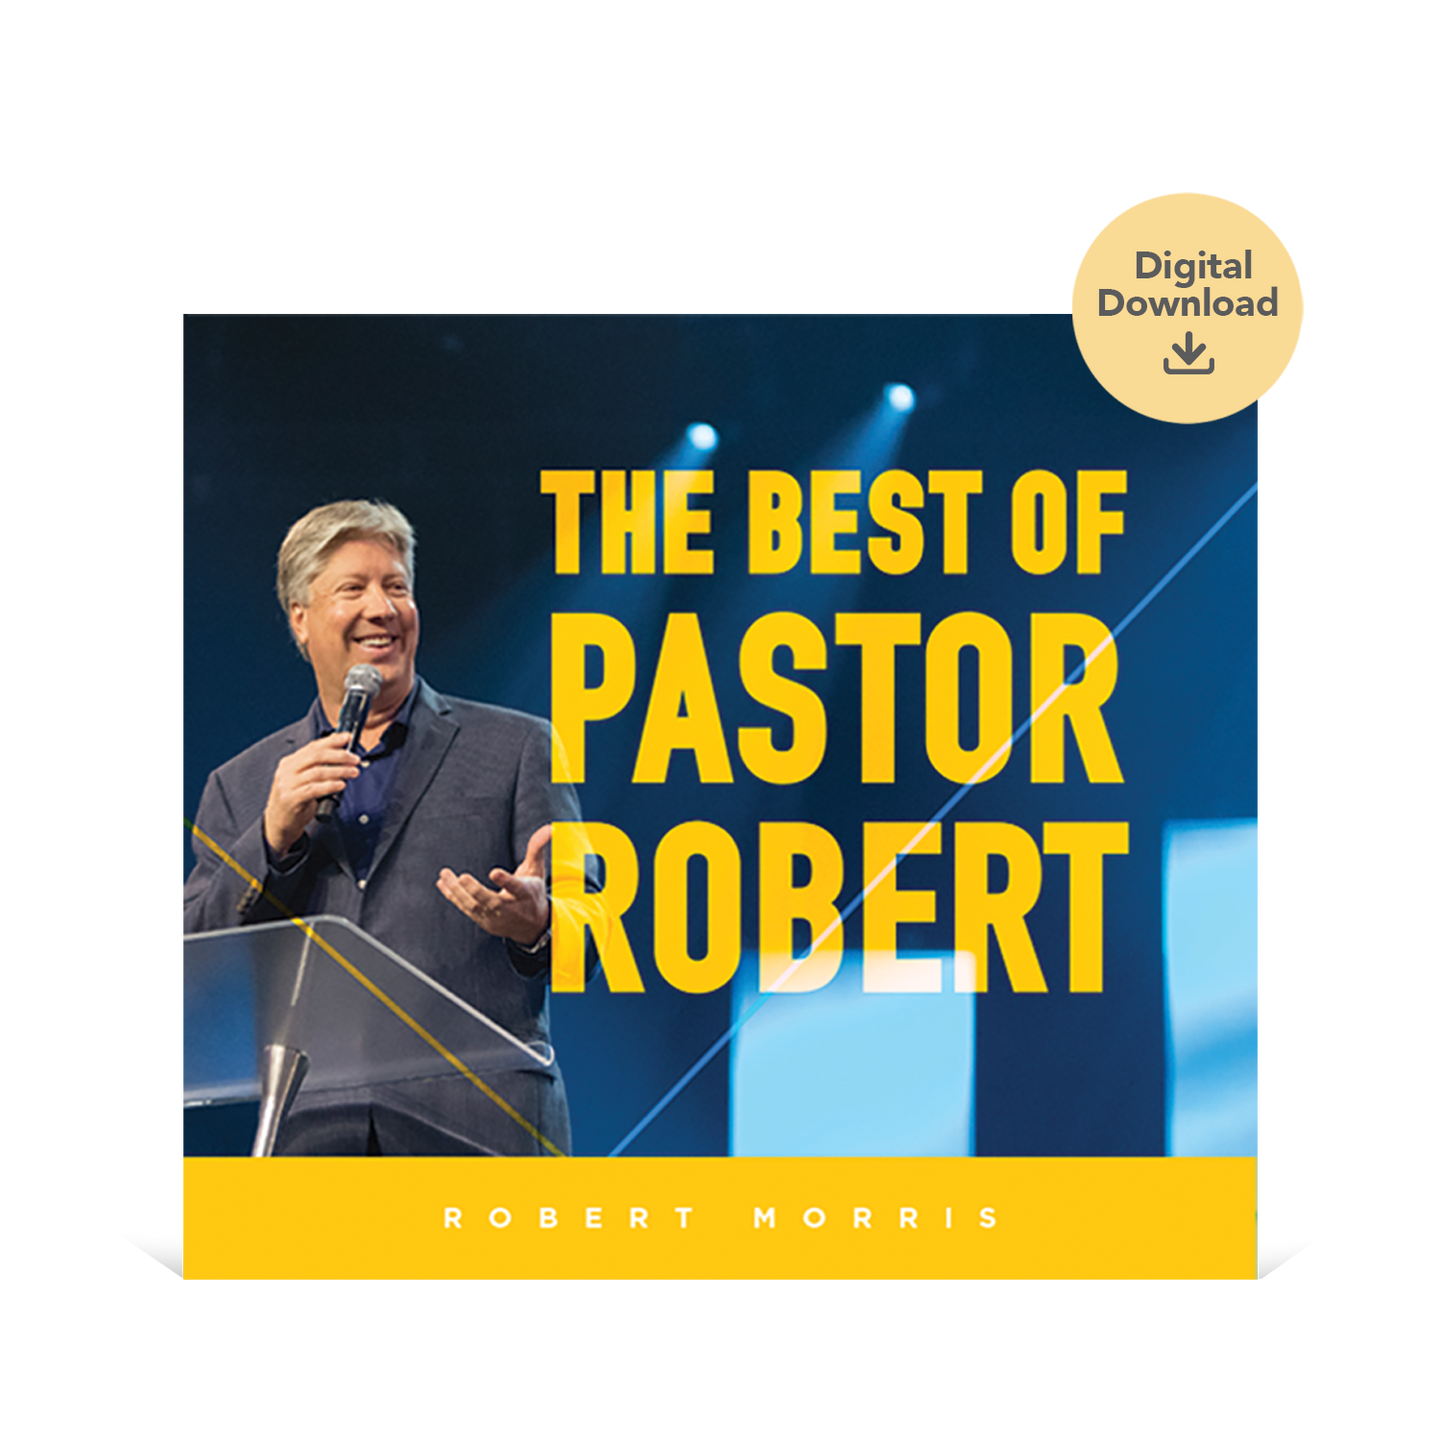 The Best of Pastor Robert Audio Digital Download